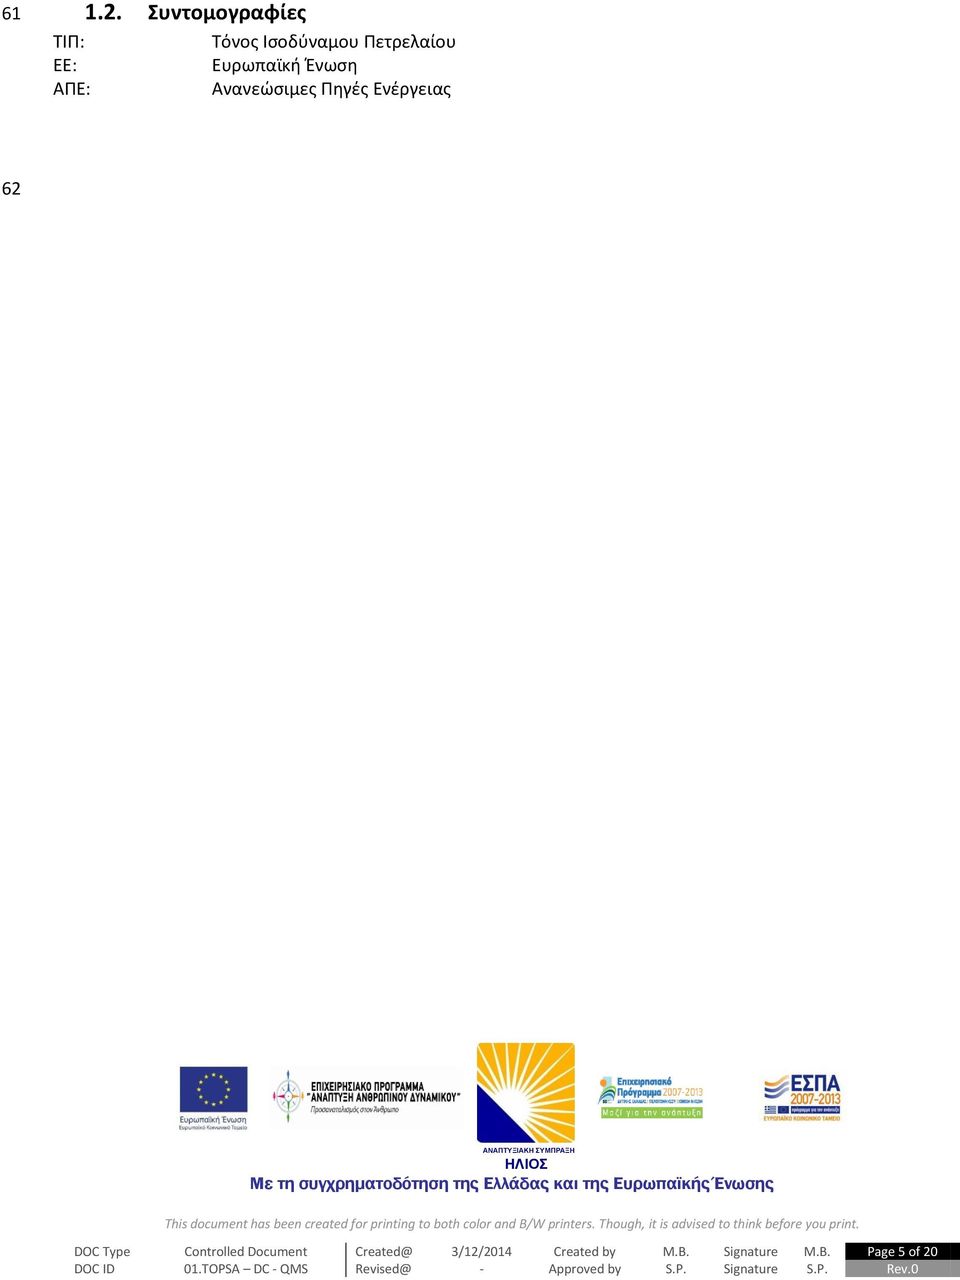 ΕΕ: Ευρωπαϊκή Ένωση ΑΠΕ: Ανανεώσιμες Πηγές